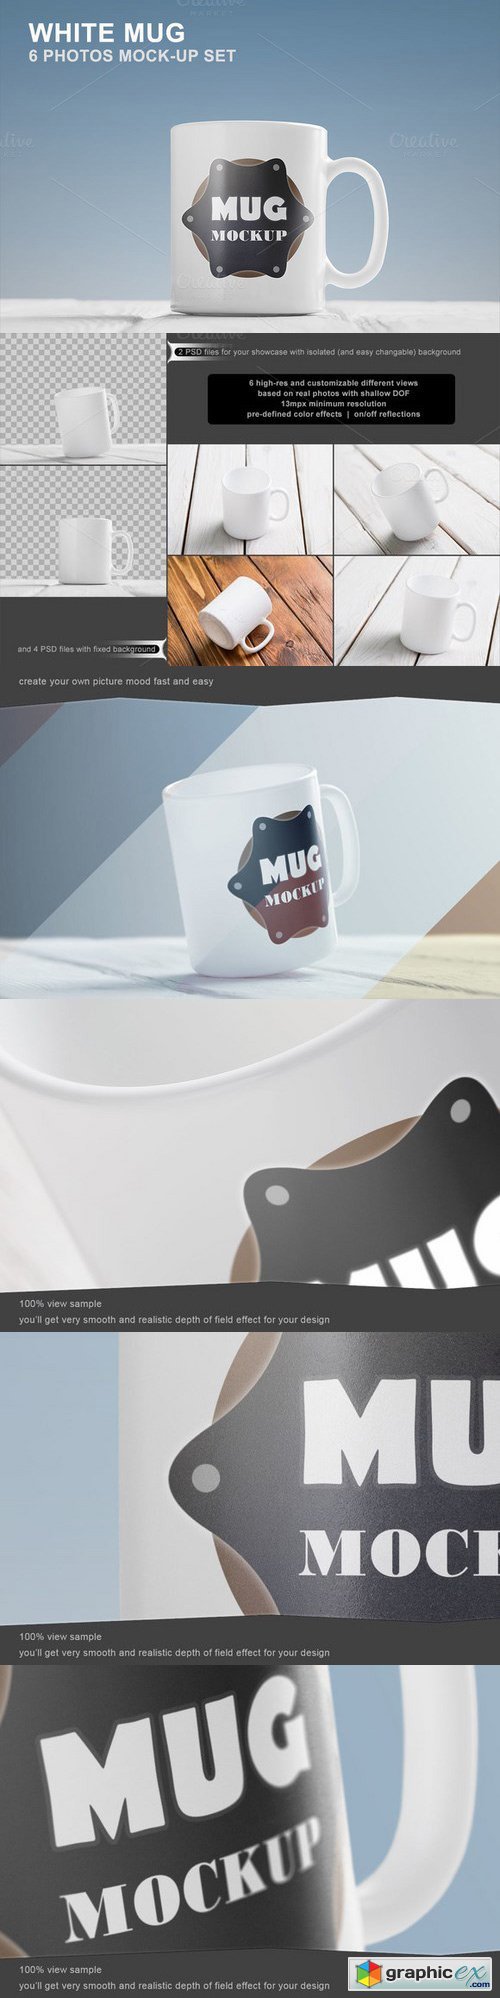 White Mug Mockup Set - 6 photos